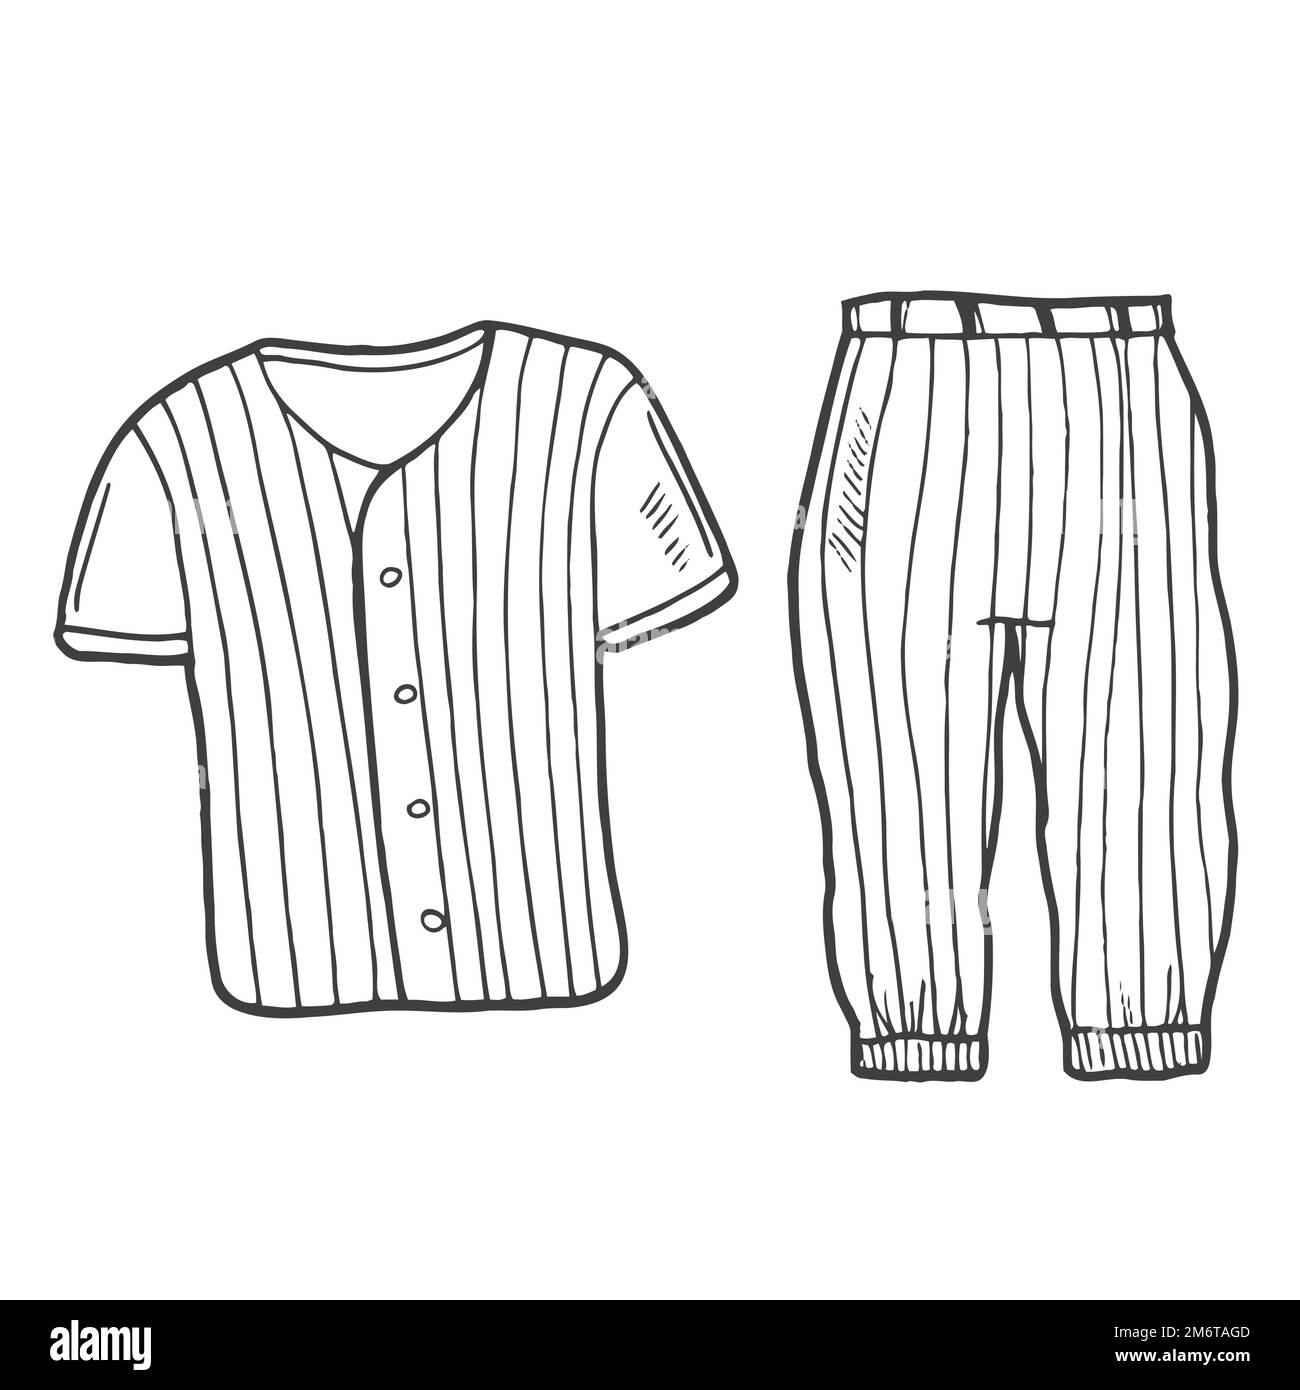 Uniforme de béisbol de fideos. Sportwear. Camiseta y pantalones. Ilustración del Vector